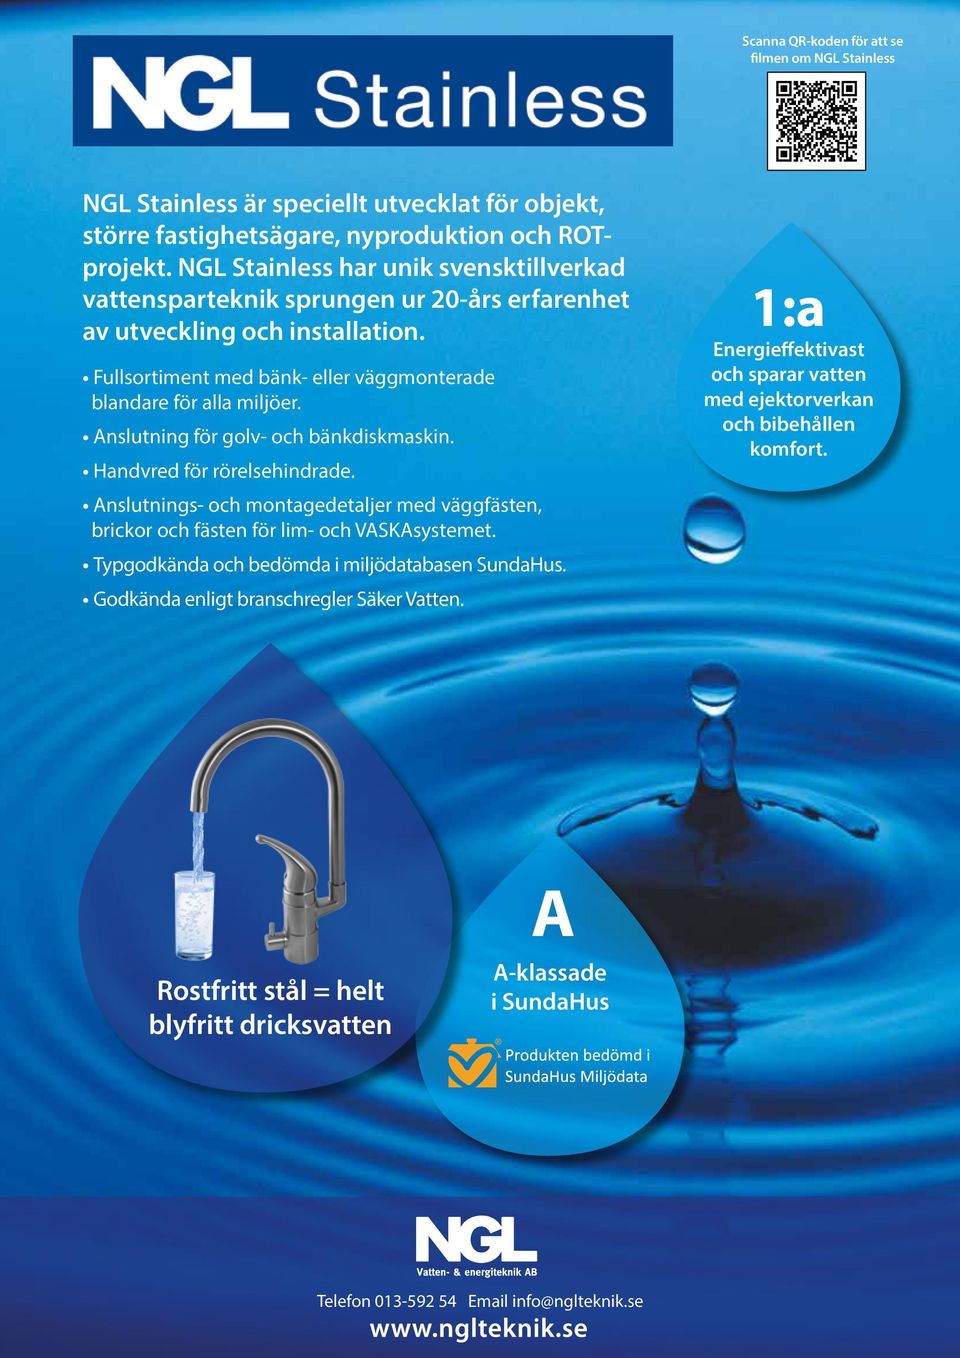 NGL Stainless har unik svensktillverkad vattensparteknik sprungen ur 20-års erfarenhet av utveckling och installation. Fullsortiment med bänk- eller väggmonterade blandare för alla miljöer.